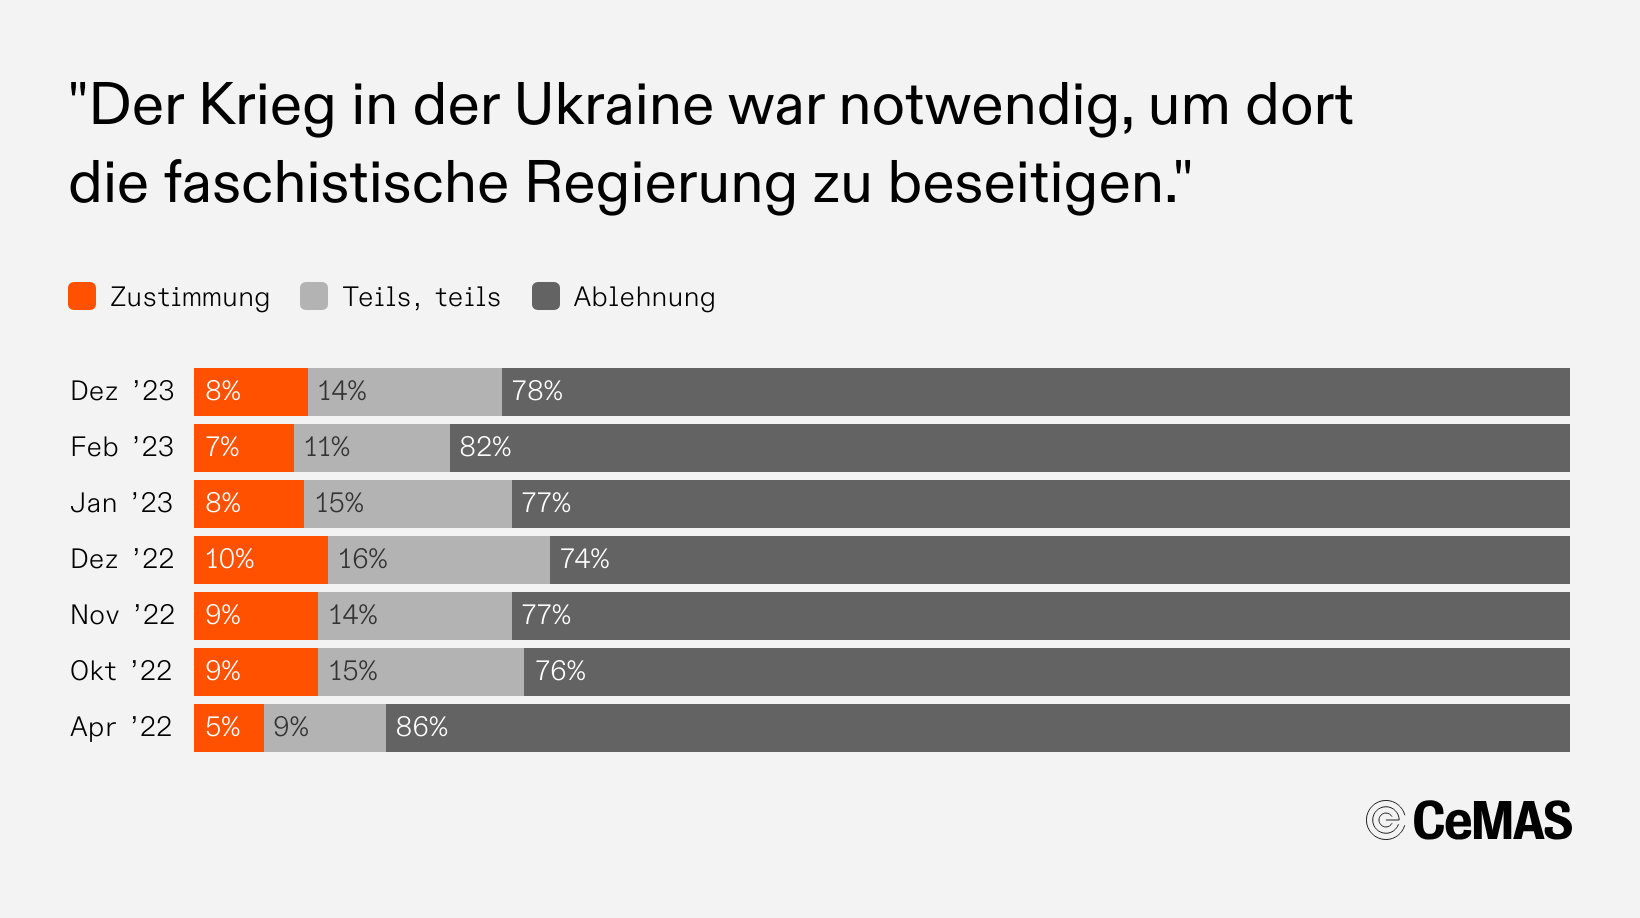 Zustimmungswerte zur Aussage „Der Krieg in der Ukraine war notwendig, um dort die faschistische Regierung zu beseitigen“:
  Dez 23: Zustimmung  8 %, Teils teils 14 %, Ablehnung 78 %
  Feb 23: Zustimmung  7 %, Teils teils 11 %, Ablehnung 82 %
  Jan 23: Zustimmung  8 %, Teils teils 15 %, Ablehnung 77 %
  Dez 22: Zustimmung 10 %, Teils teils 16 %, Ablehnung 74 %
  Nov 22: Zustimmung  9 %, Teils teils 14 %, Ablehnung 77 %
  Okt 22: Zustimmung  9 %, Teils teils 15 %, Ablehnung 76 %
  Apr 22: Zustimmung  5 %, Teils teils  9 %, Ablehnung 86 %